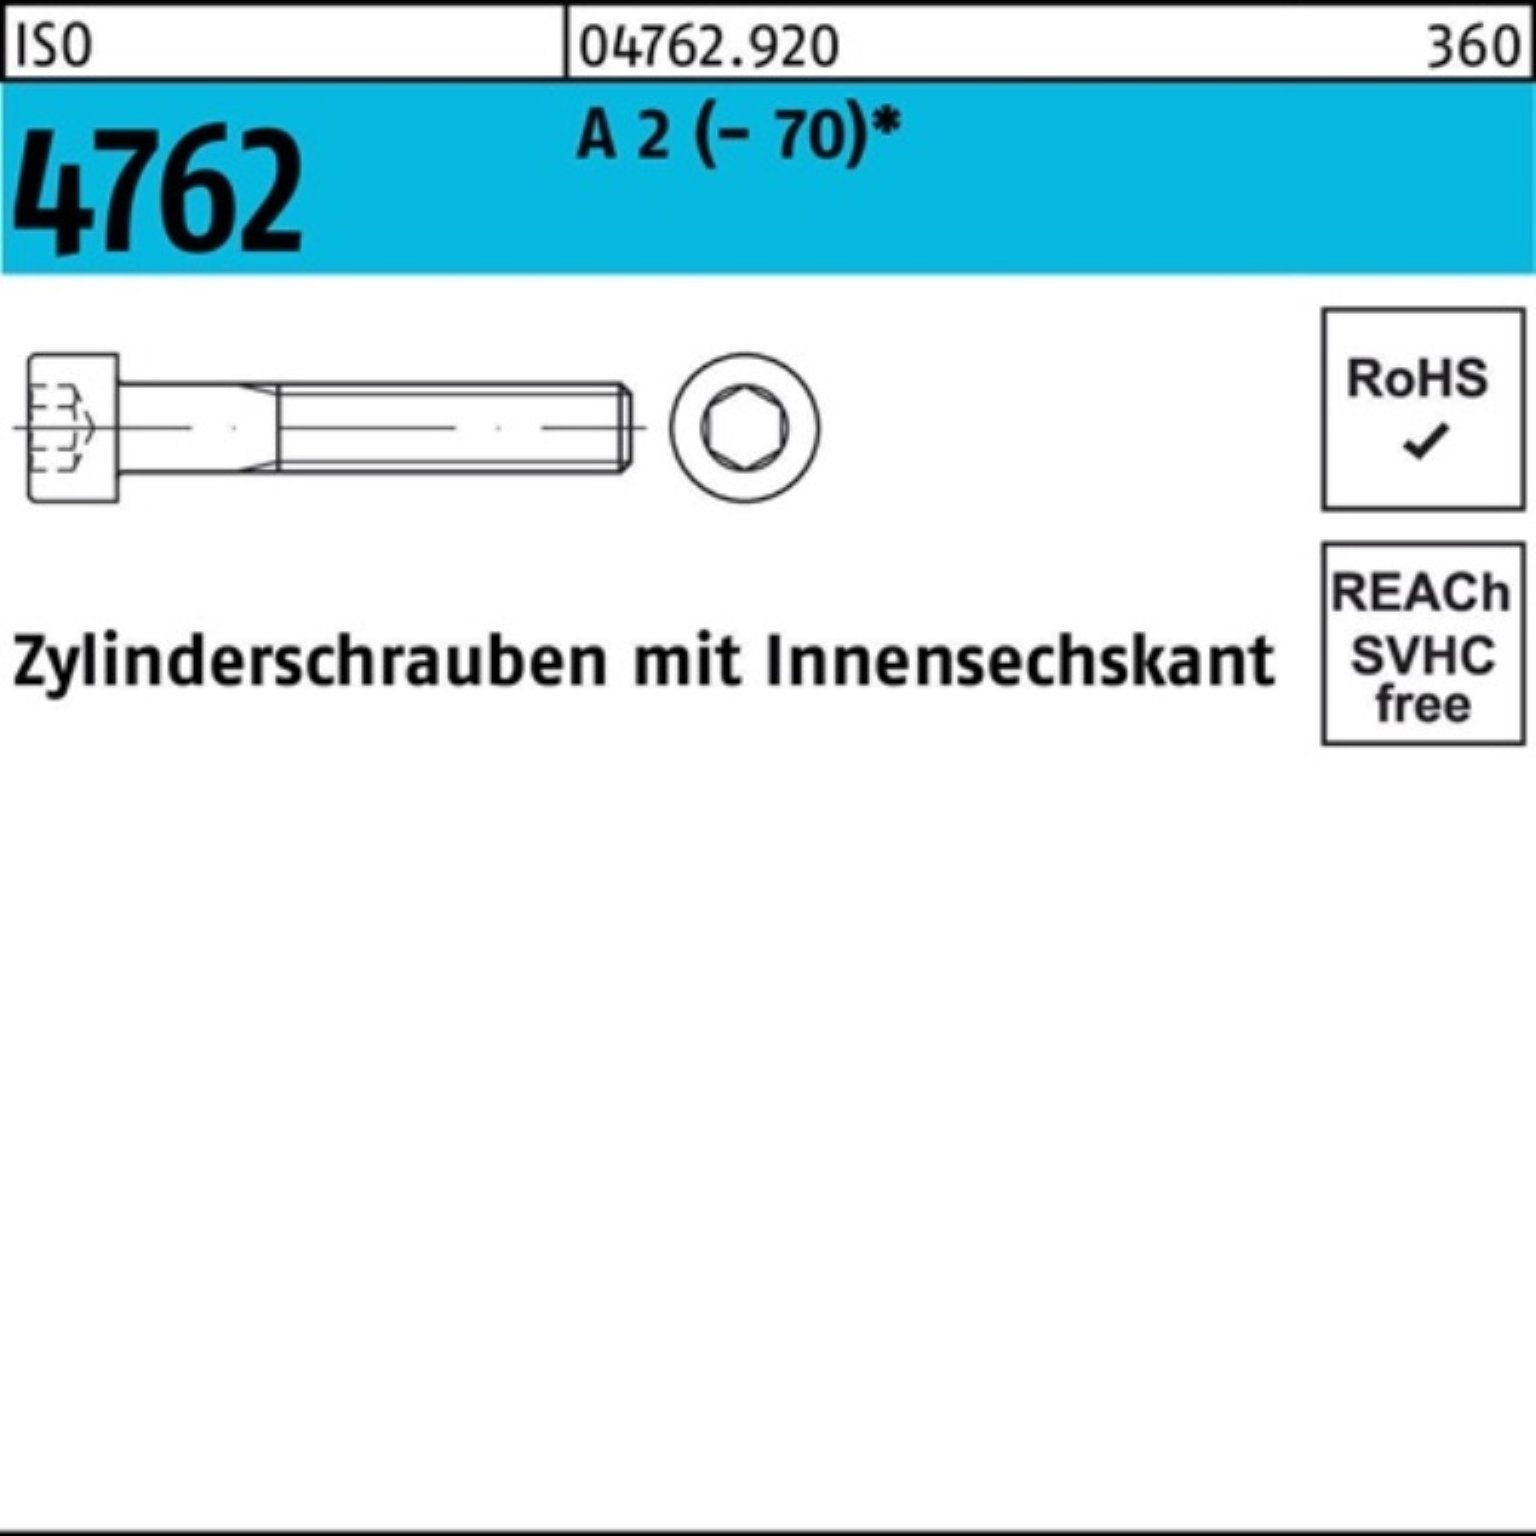 Reyher Zylinderschraube 100er M8x Pack Innen-6kt Zylinderschraube Stück 4762 ISO IS 2 100 A 8